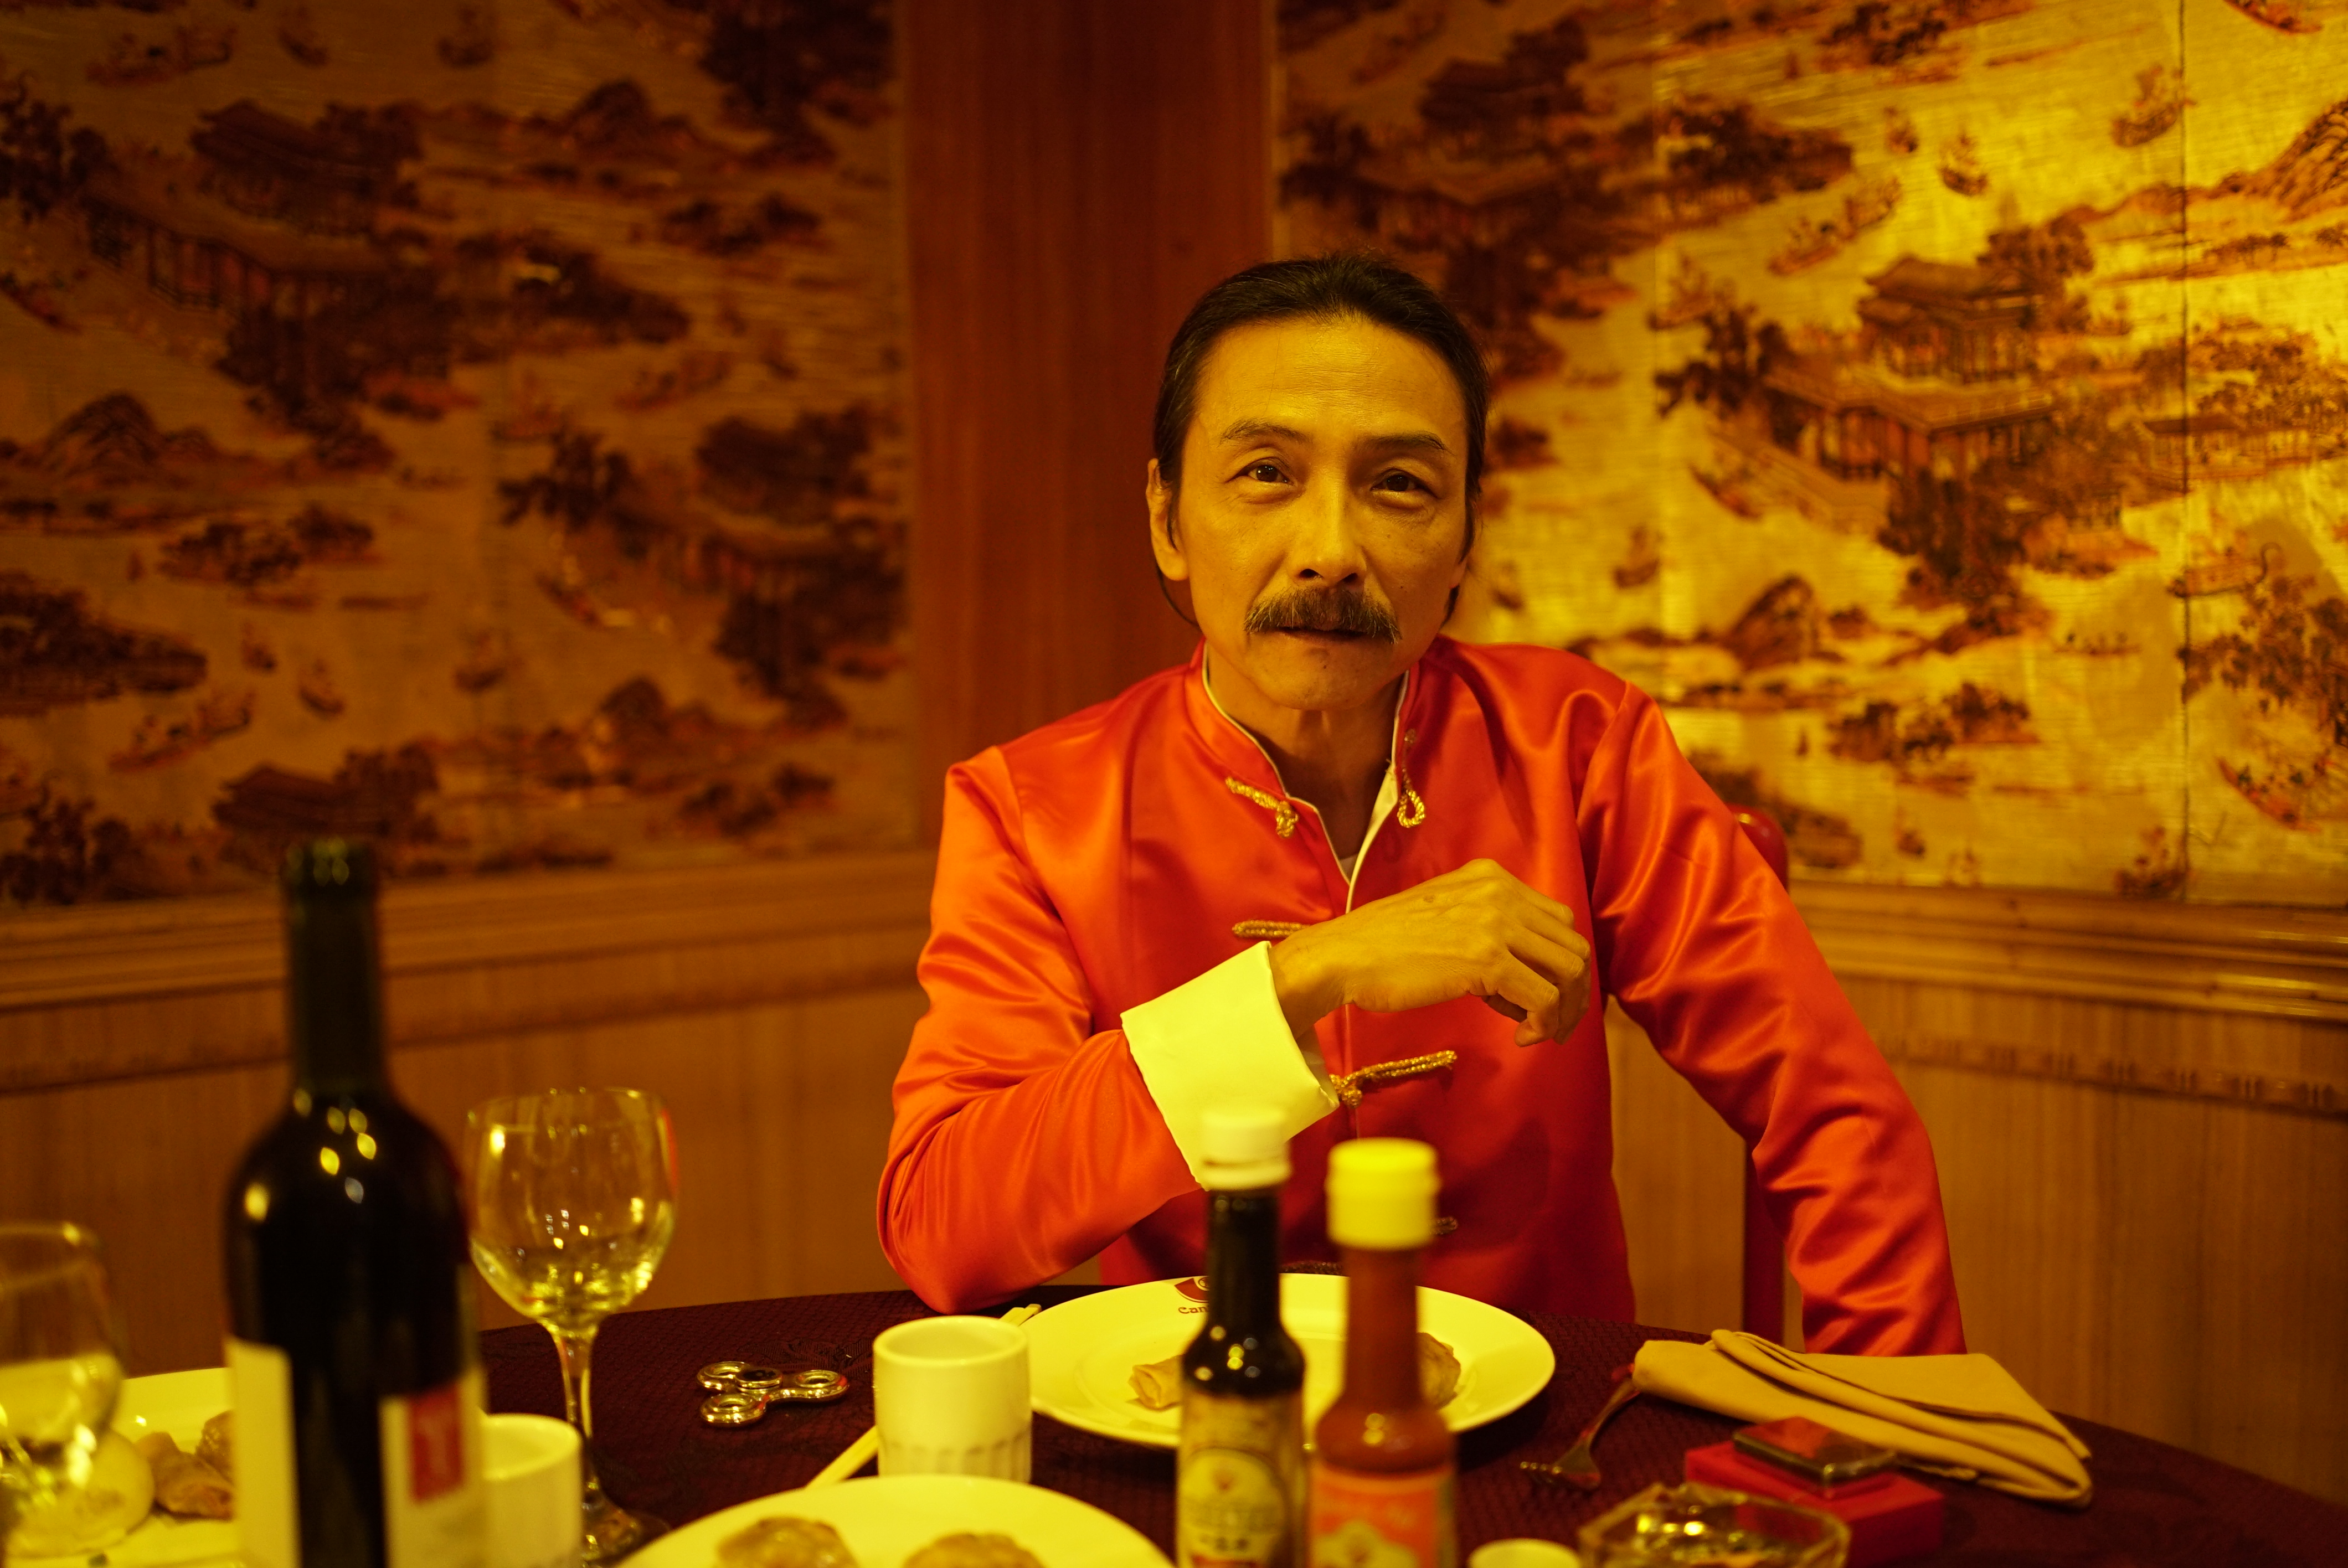 Director Paúl Venegas retrata el 'Vacío' chino en Guayaquil | Cine |  Entretenimiento | El Universo